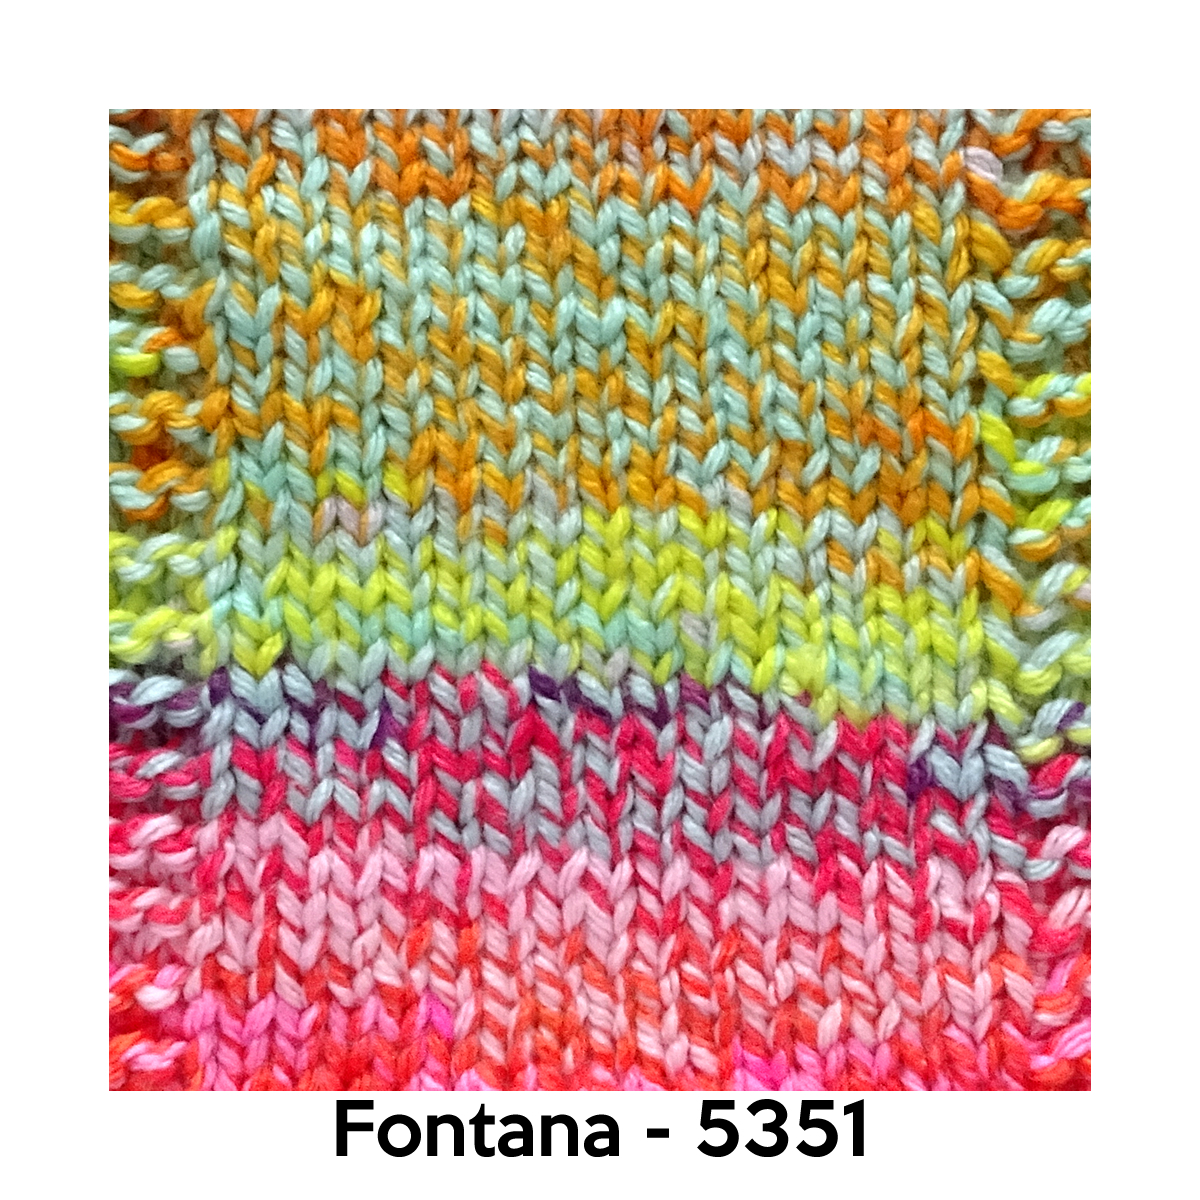 Fontana - 5351